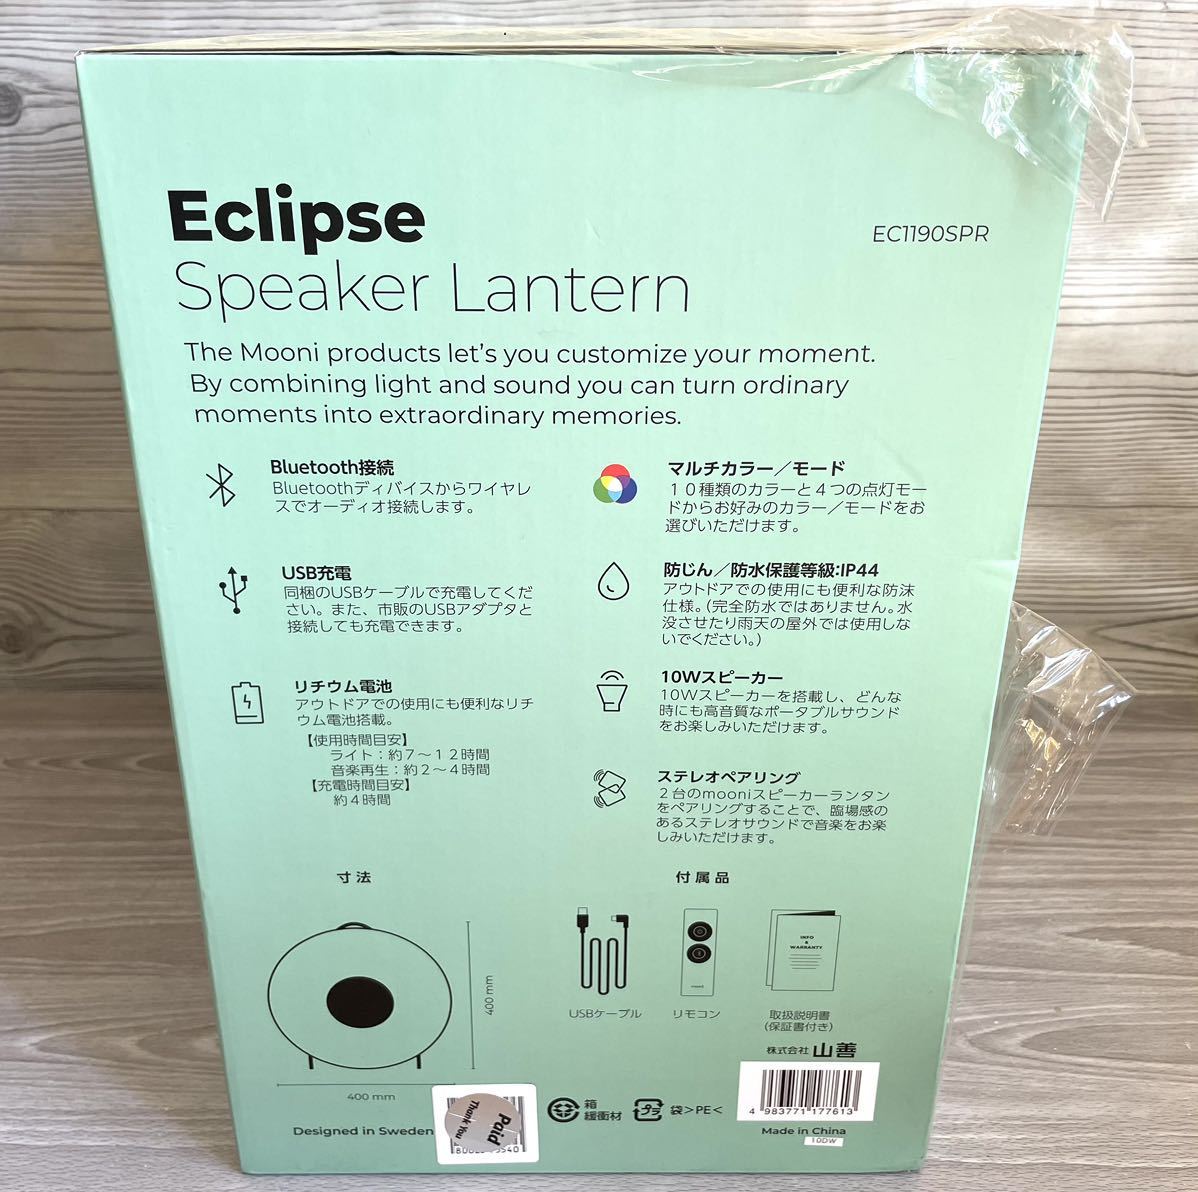 新品 スピーカー LEDミュージックランタン Bluetooth スピーカー搭載 調色10段階 調光4段階 リモコン付 Eclipse Speaker  mooni ムーニ